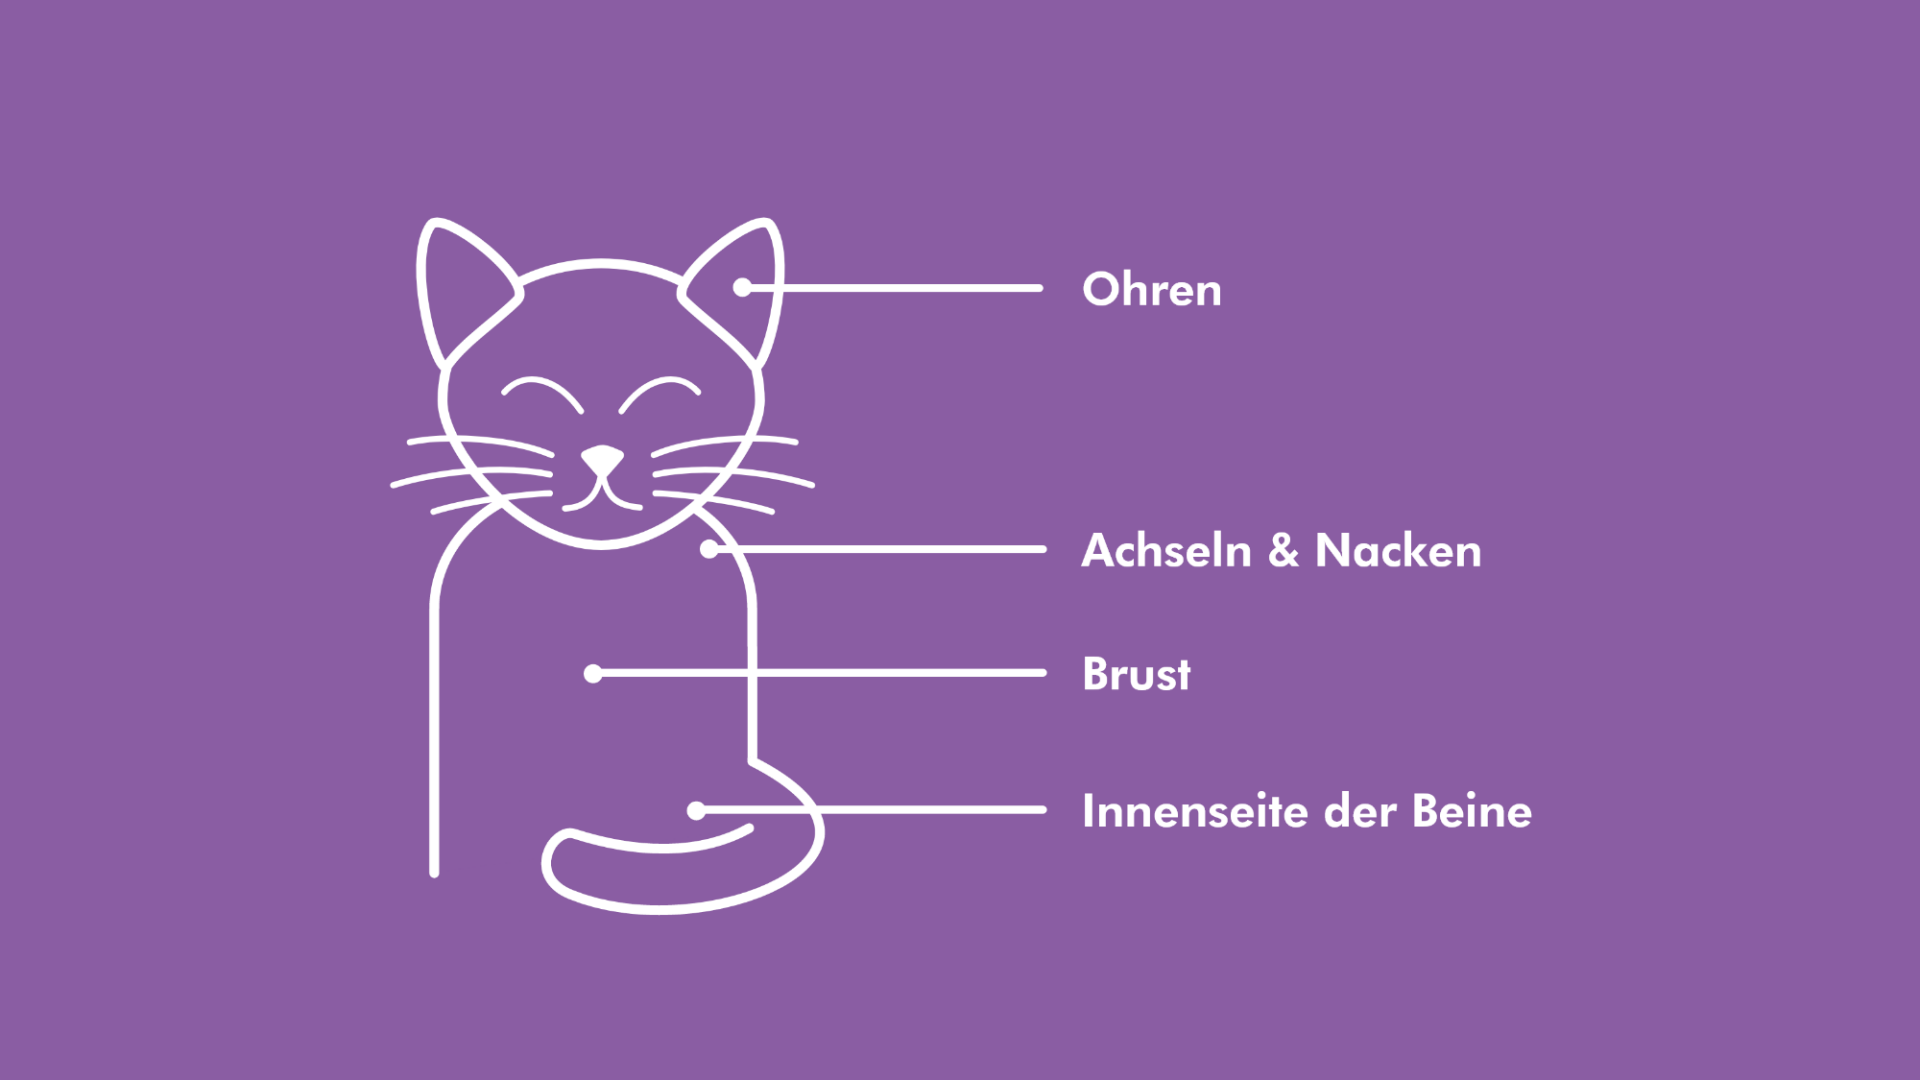 Auf dem Bild ist eine Katze dargestellt. Die häufigsten Stellen für Zeckenbefall Achseln, Innenseite der Beine, Nacken, Ohren, Brust sind markiert. 